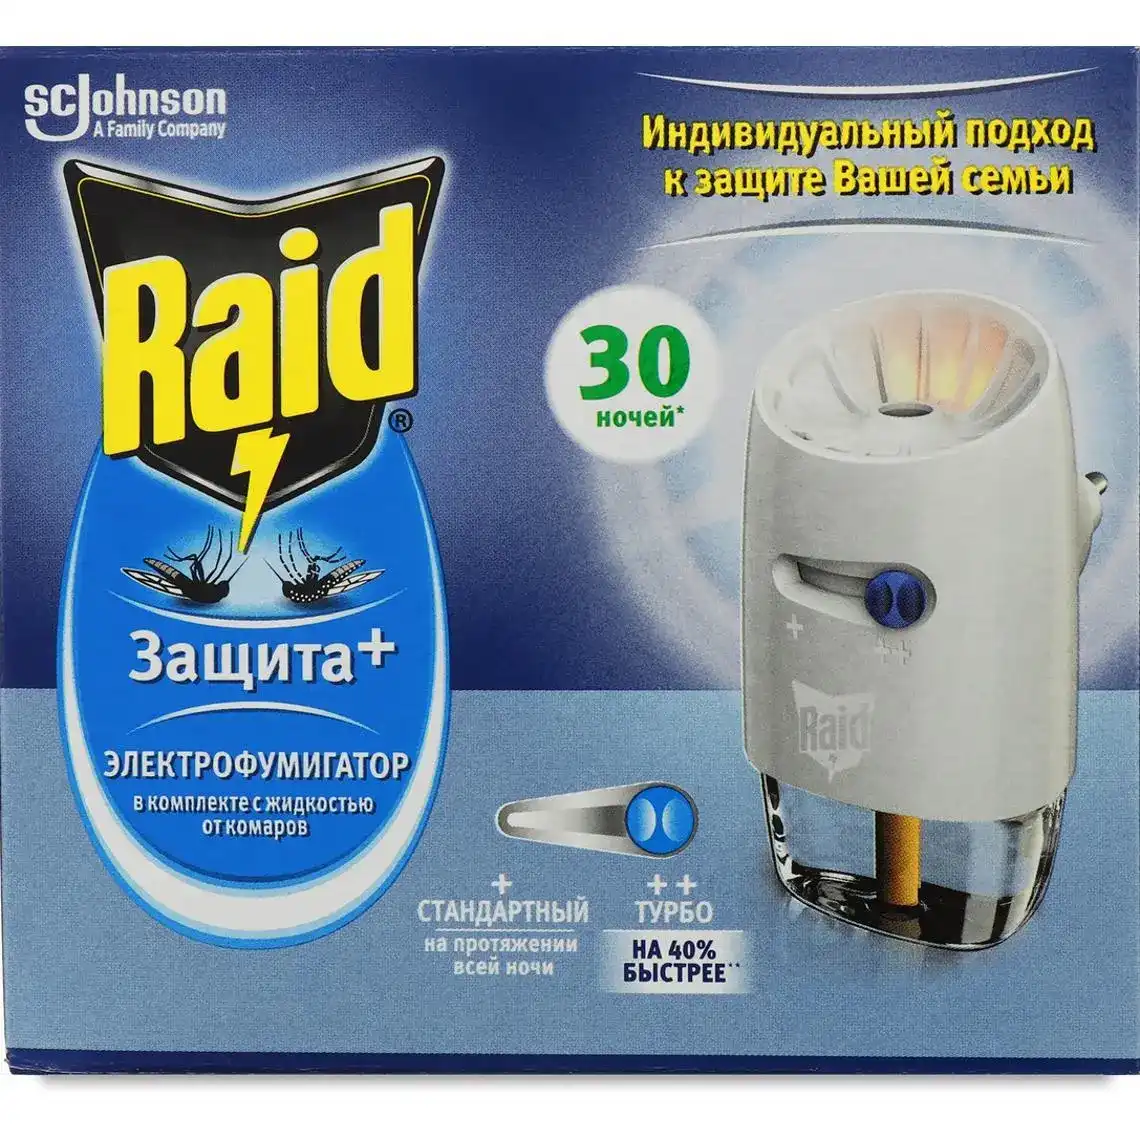 Фумігатор Raid "Захист+" 30 ночей з регулятором інтенсивності + рідина від комарів  